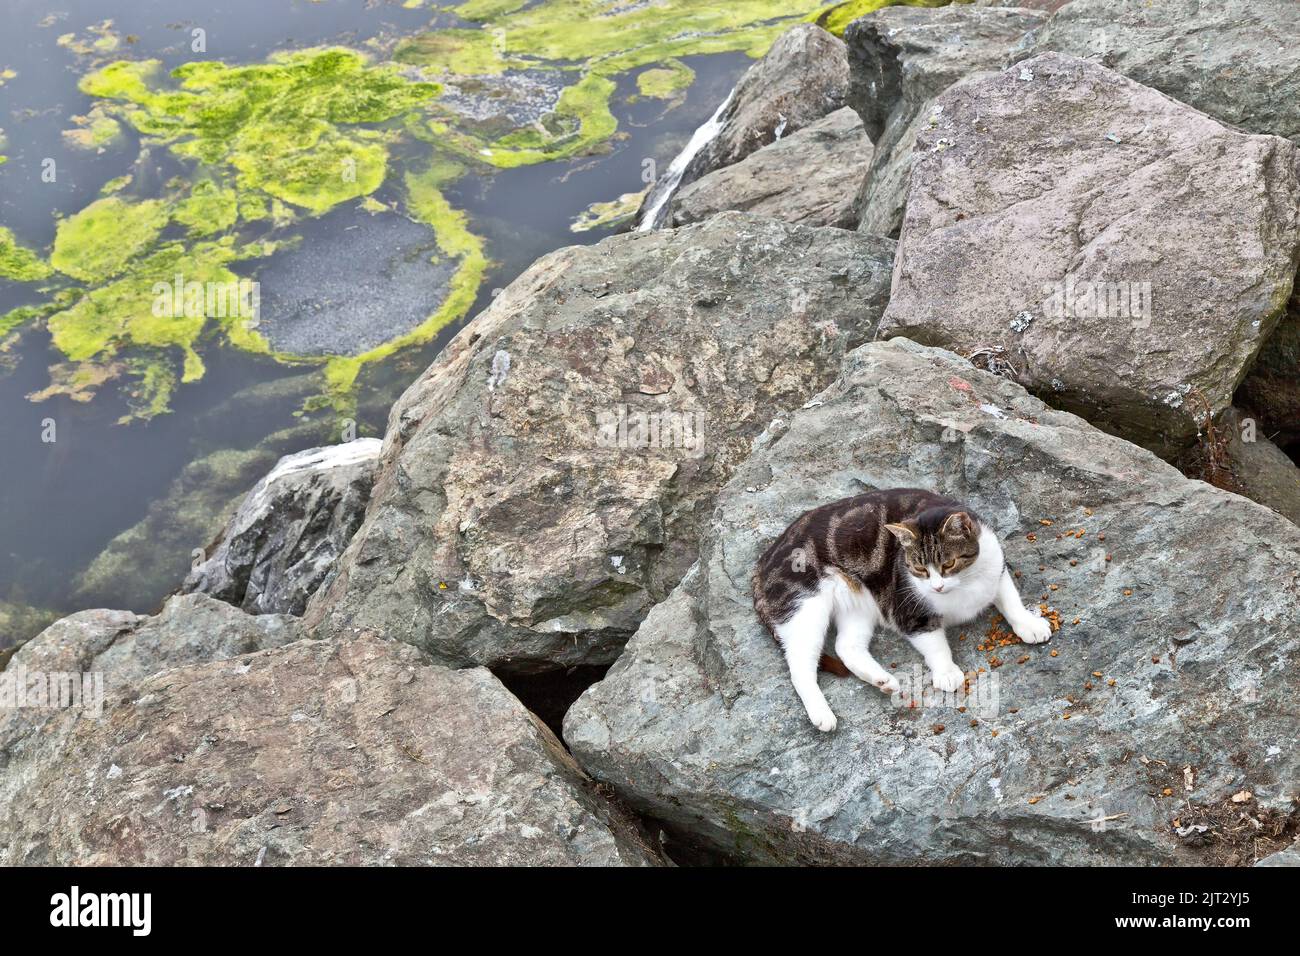 Abbandonato gatto senza dimora 'Felis catus' (gatto casa), riposante lungo rocce di rinforzo, restante cibo gatto, barca da pesca, porto, coperto di nebbia. Foto Stock